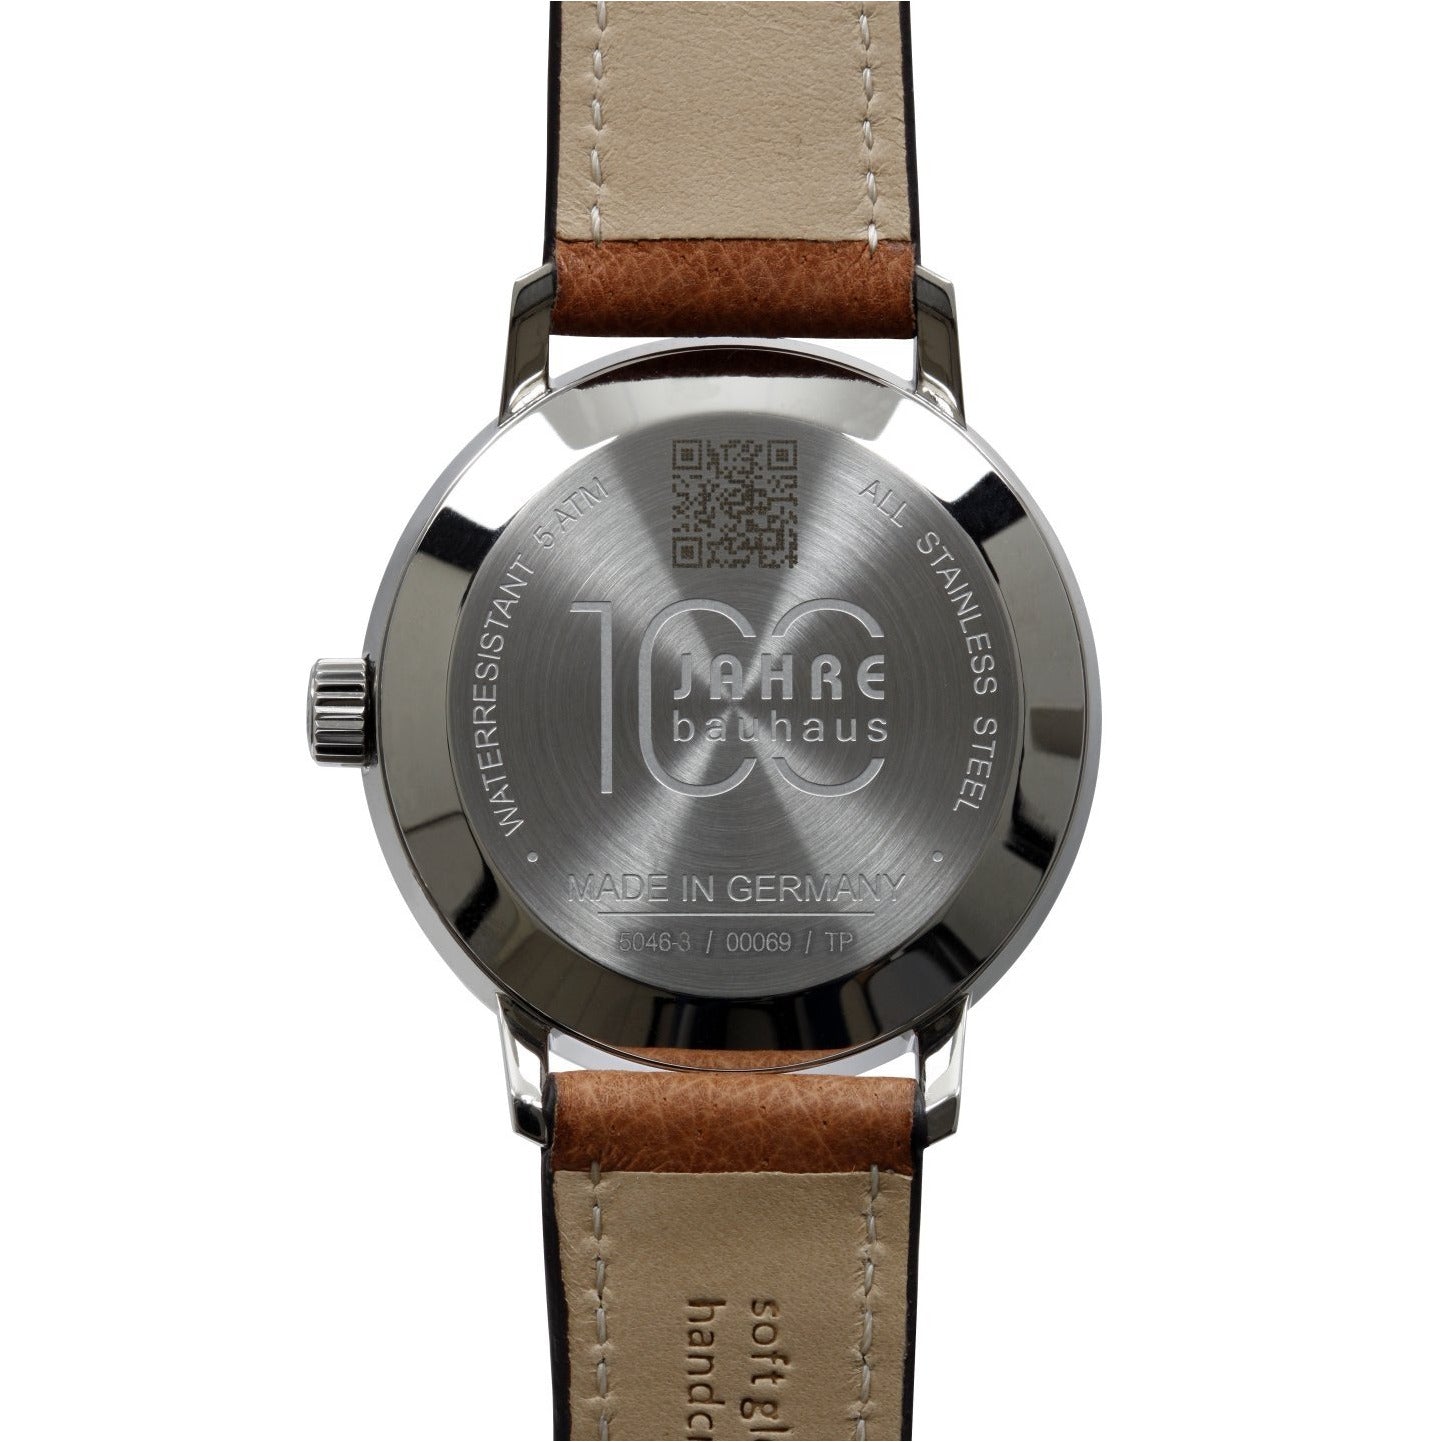 IRON ANNIE Bauhaus Blue/Brown Watch